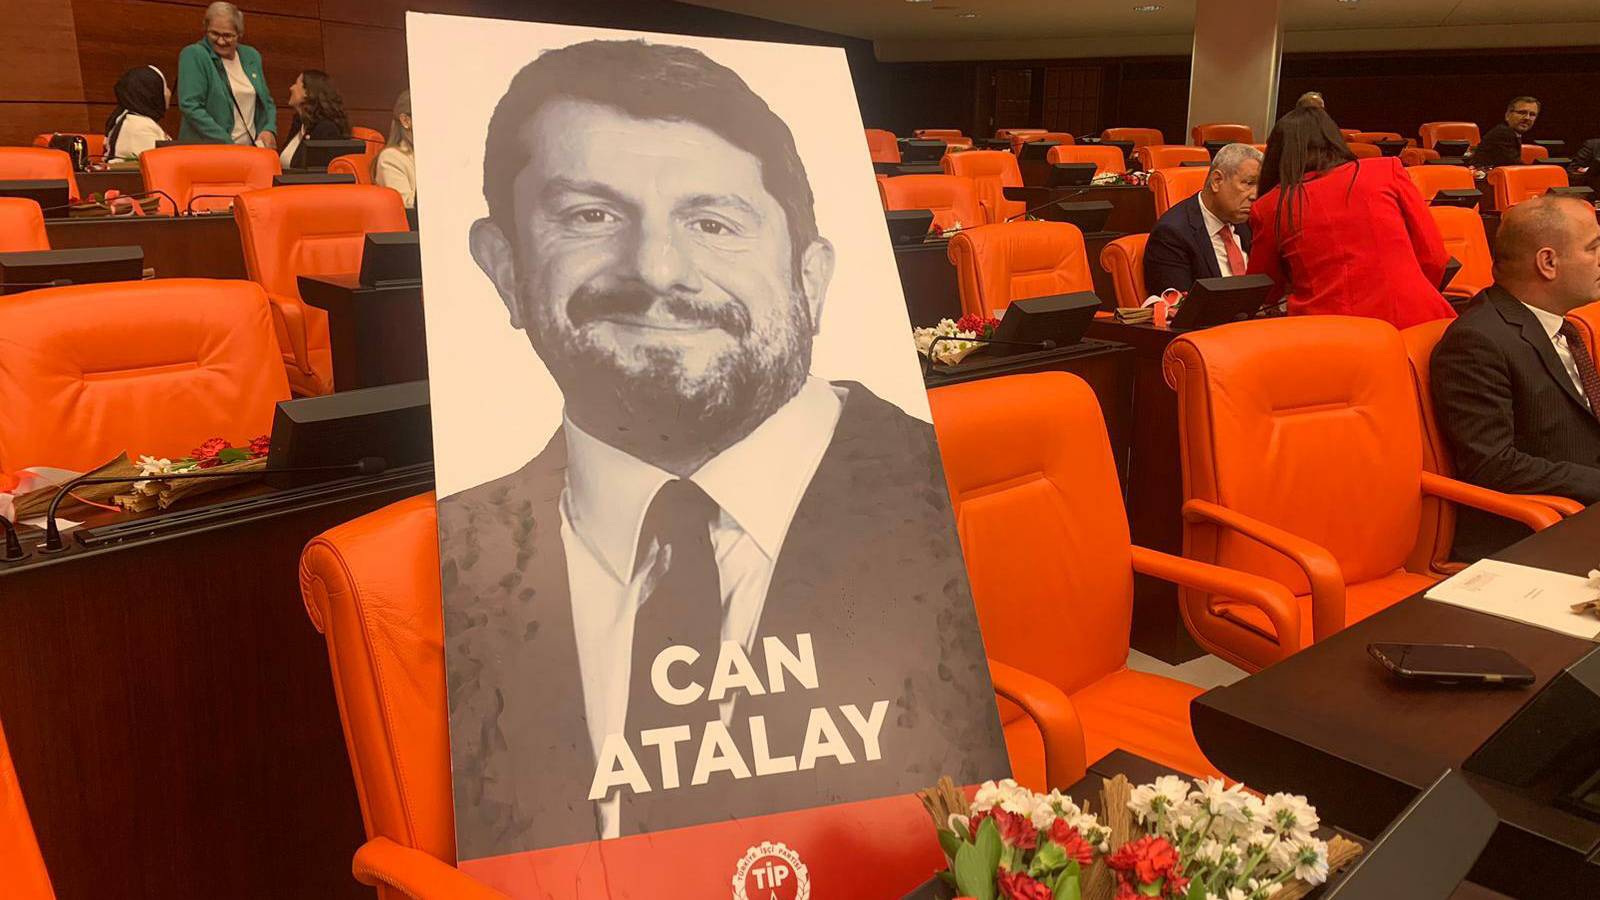 TİP milletvekili Can Atalay'ın tahliye talebine olumsuz yanıt veren Yargıtay, karara yapılan itirazı da reddetti